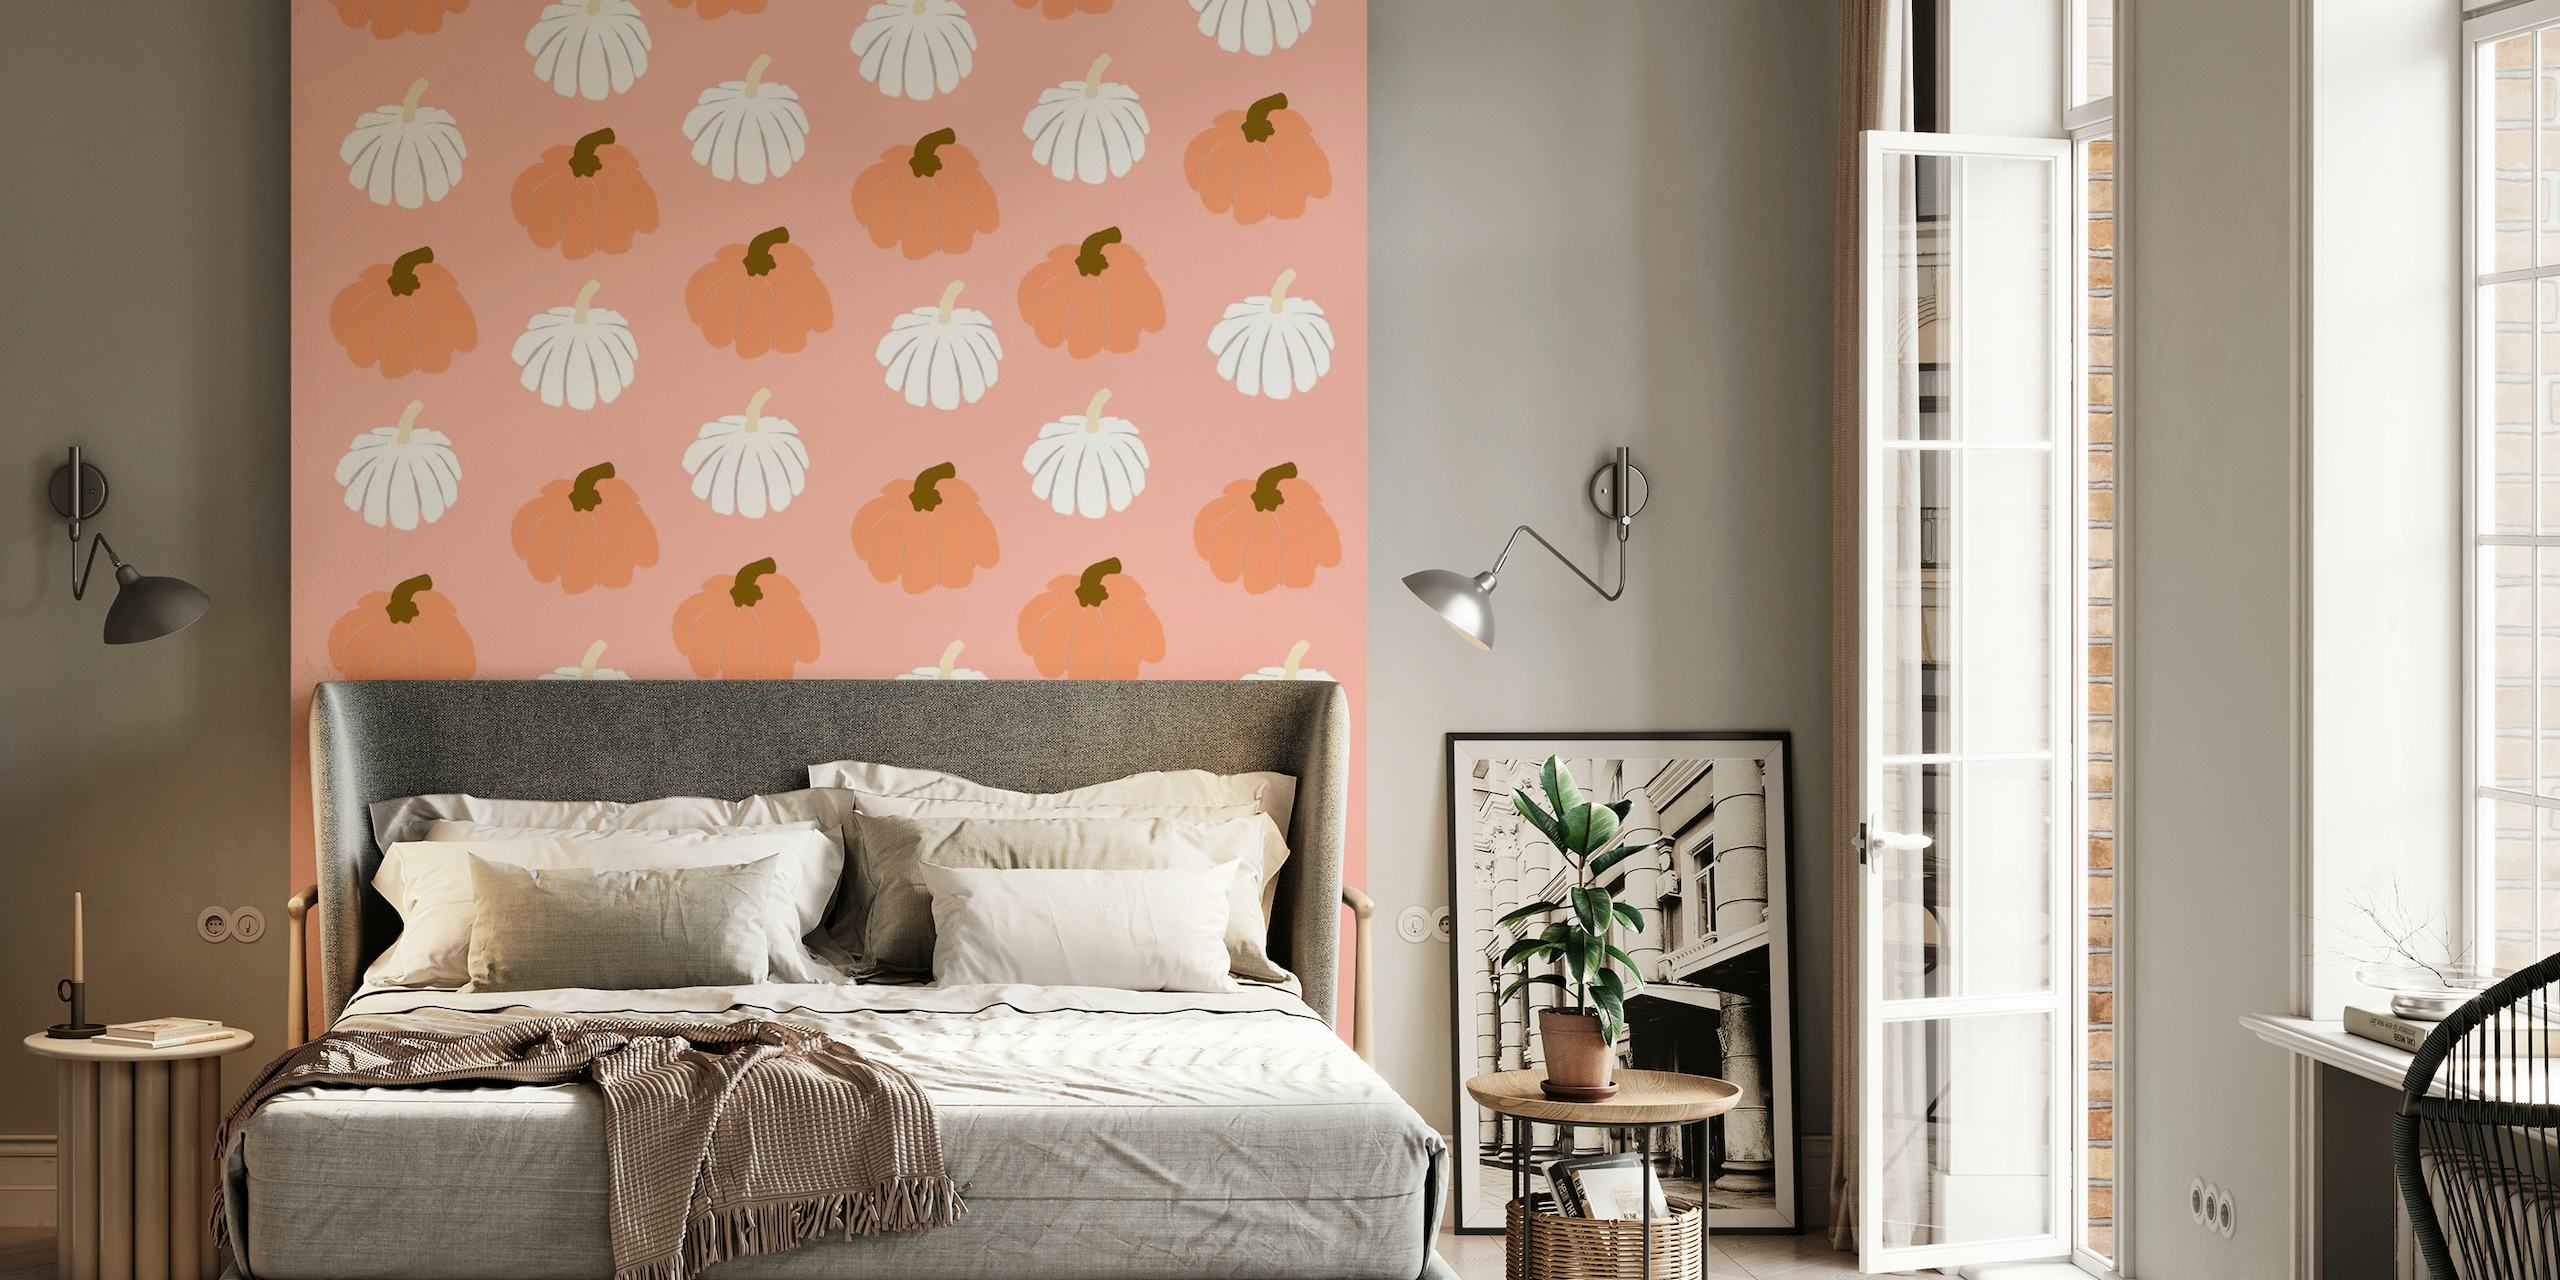 Fotobehang met oranje en wit pompoenpatroon op blozende achtergrond